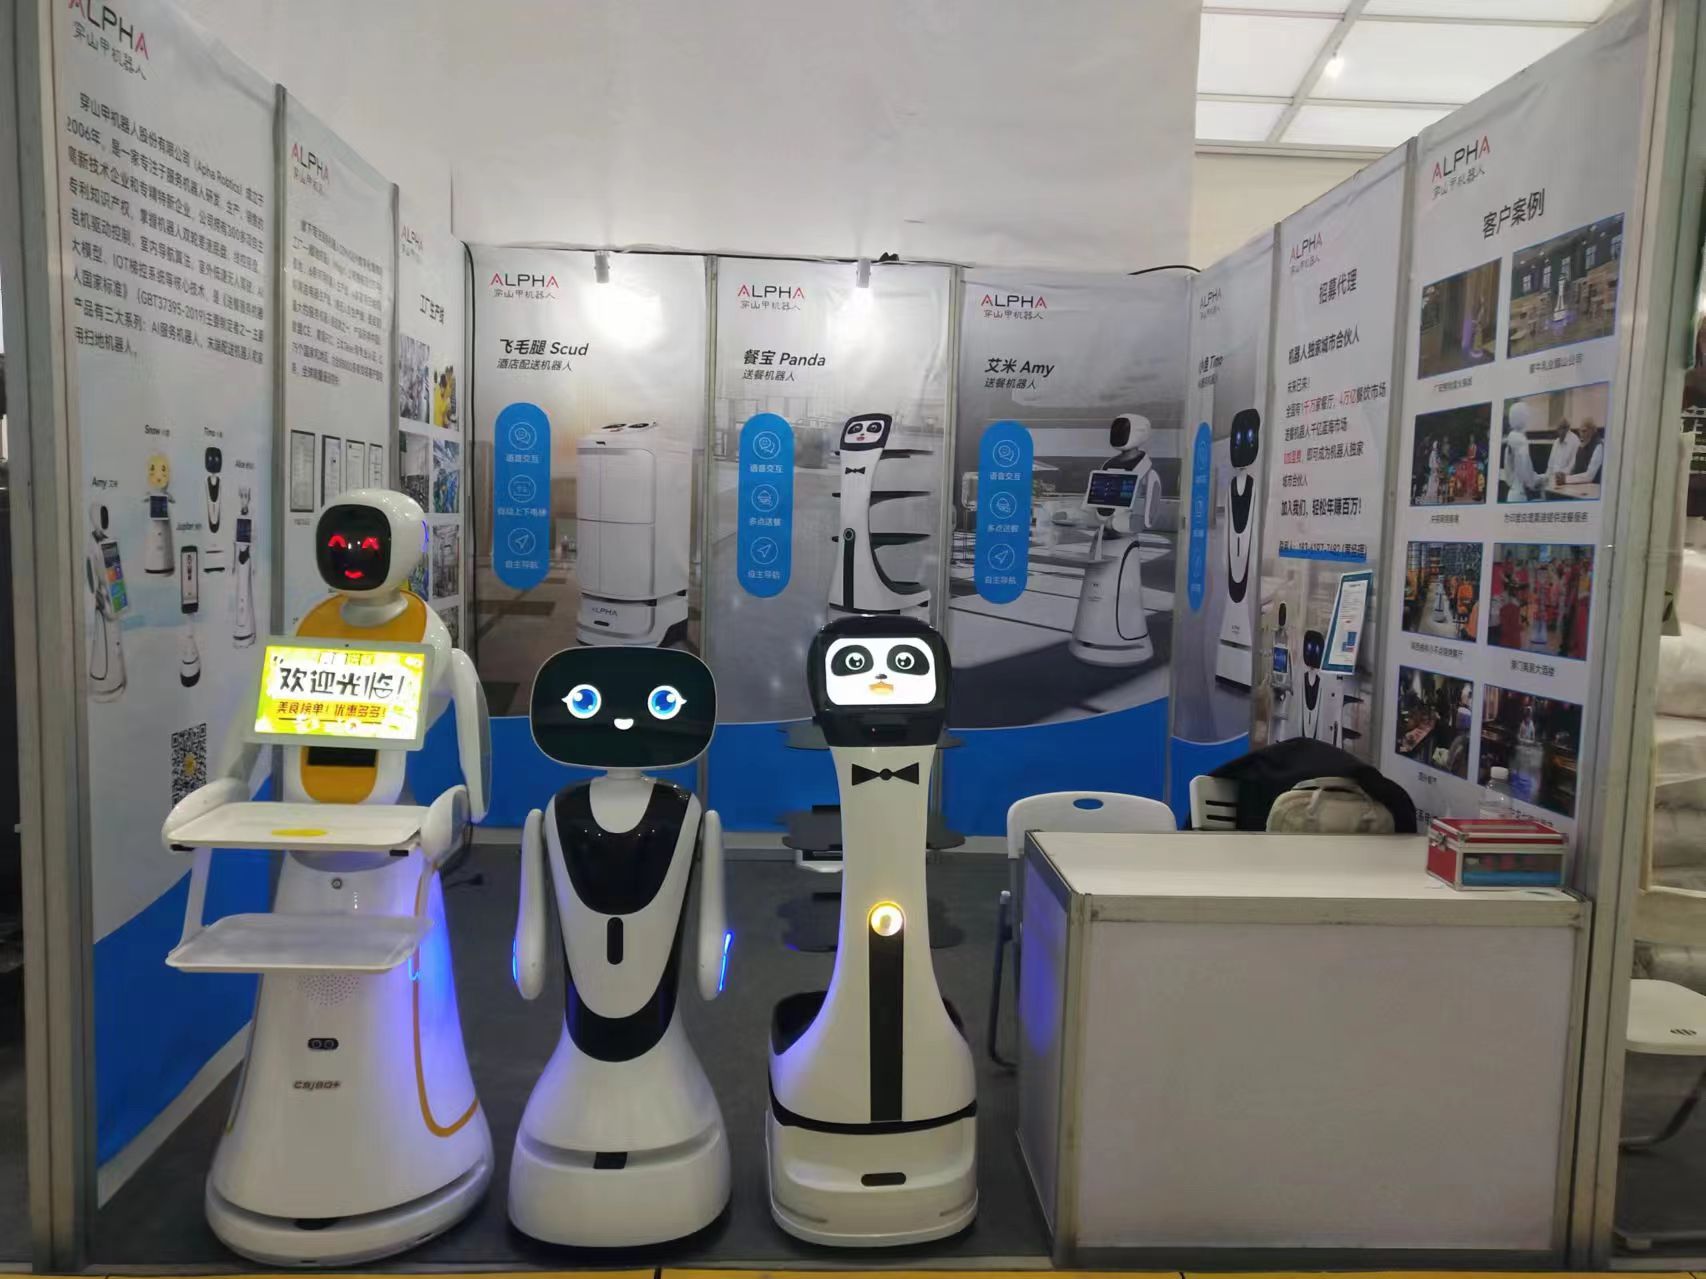 หุ่นยนต์ซูโจวอัลฟ่าฉายแสงที่นิทรรศการสองเมือง เทคโนโลยีอัจฉริยะเป็นผู้นำนวัตกรรมของโรงแรมและอุตสาหกรรมอาหาร